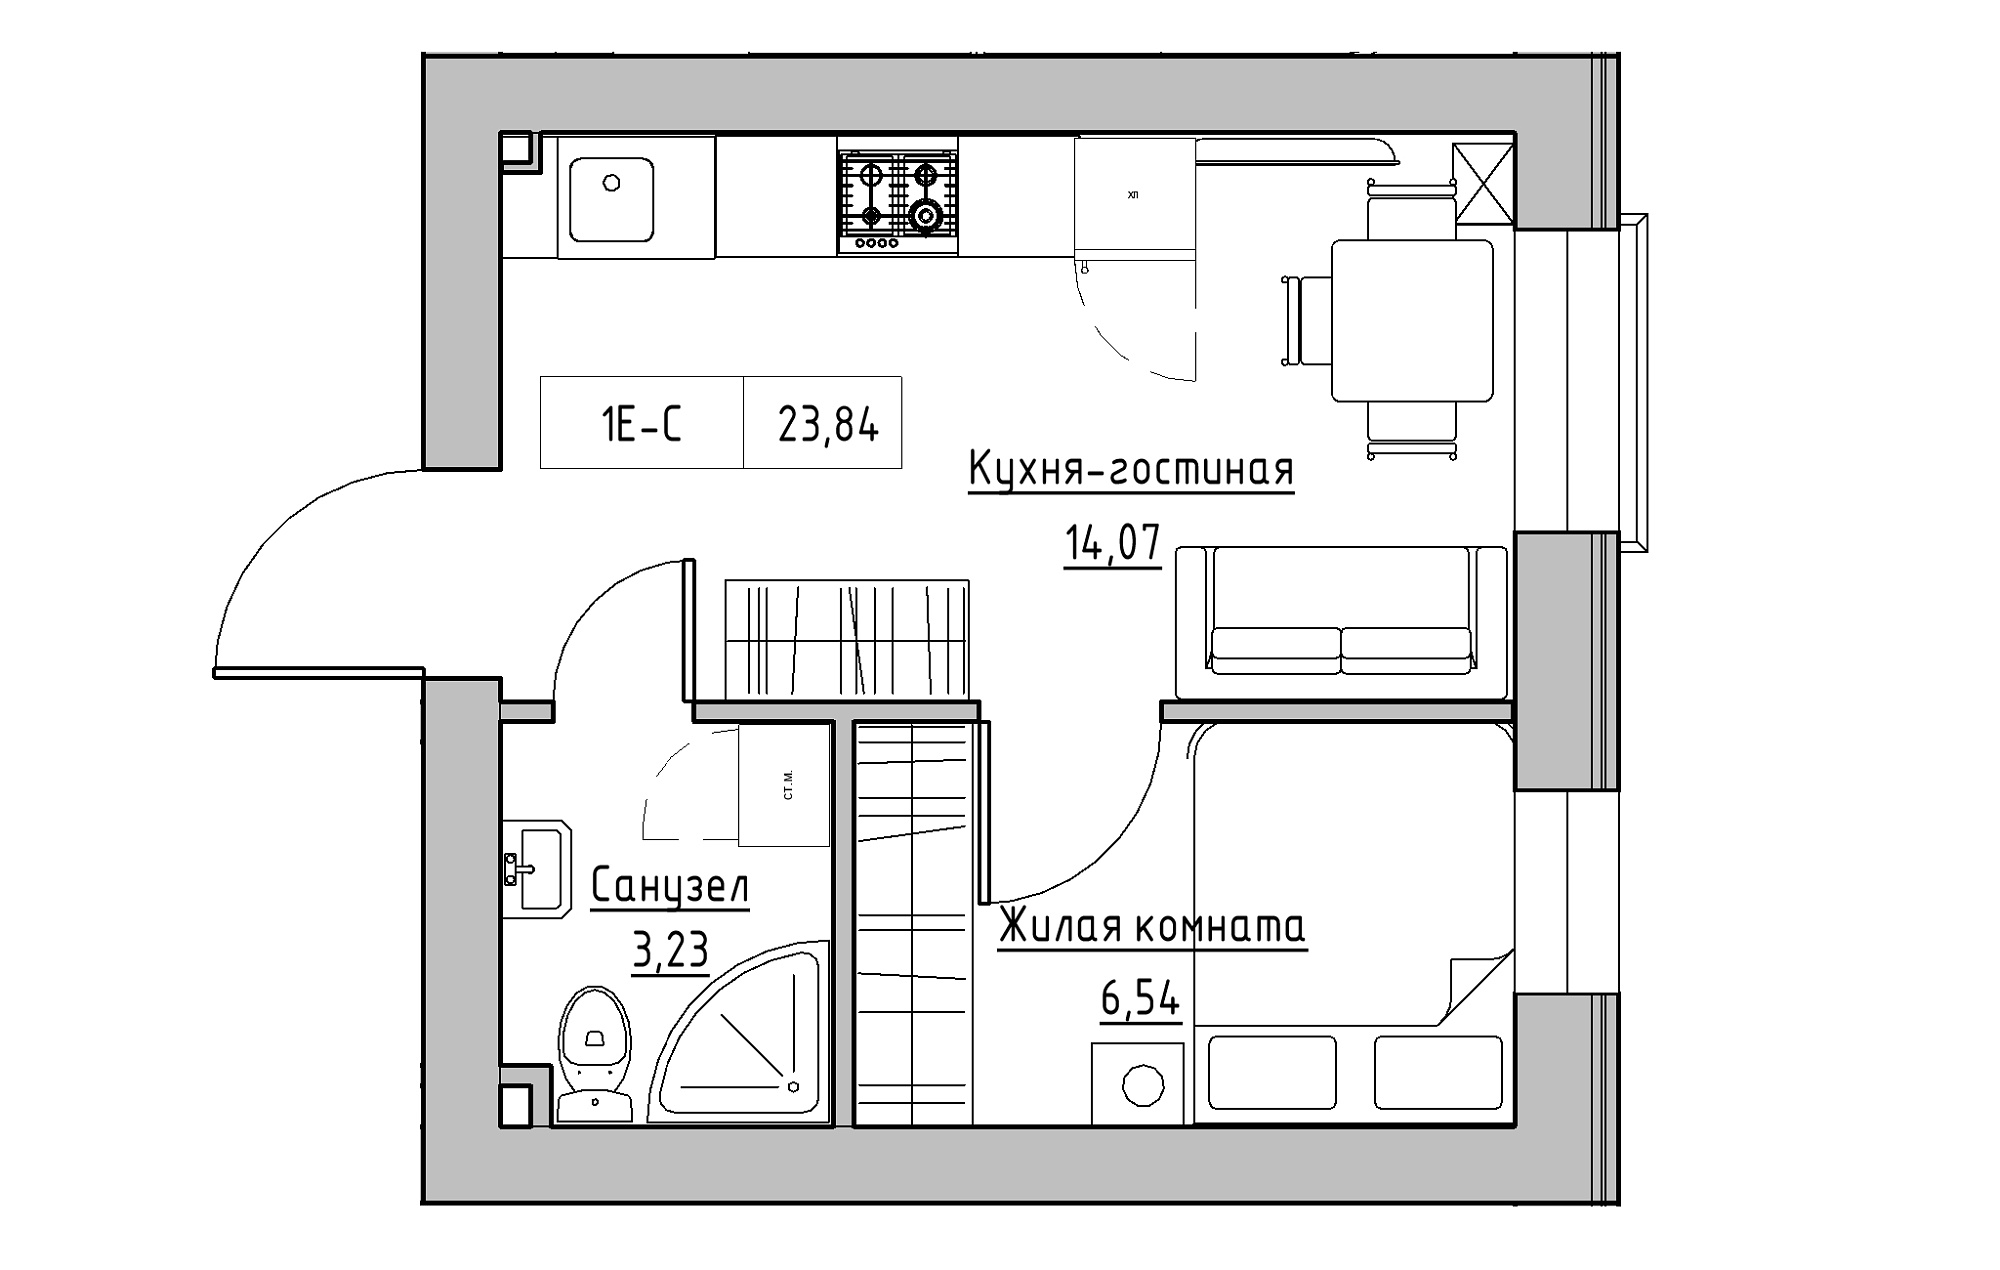 Планування 1-к квартира площею 23.84м2, KS-018-04/0011.